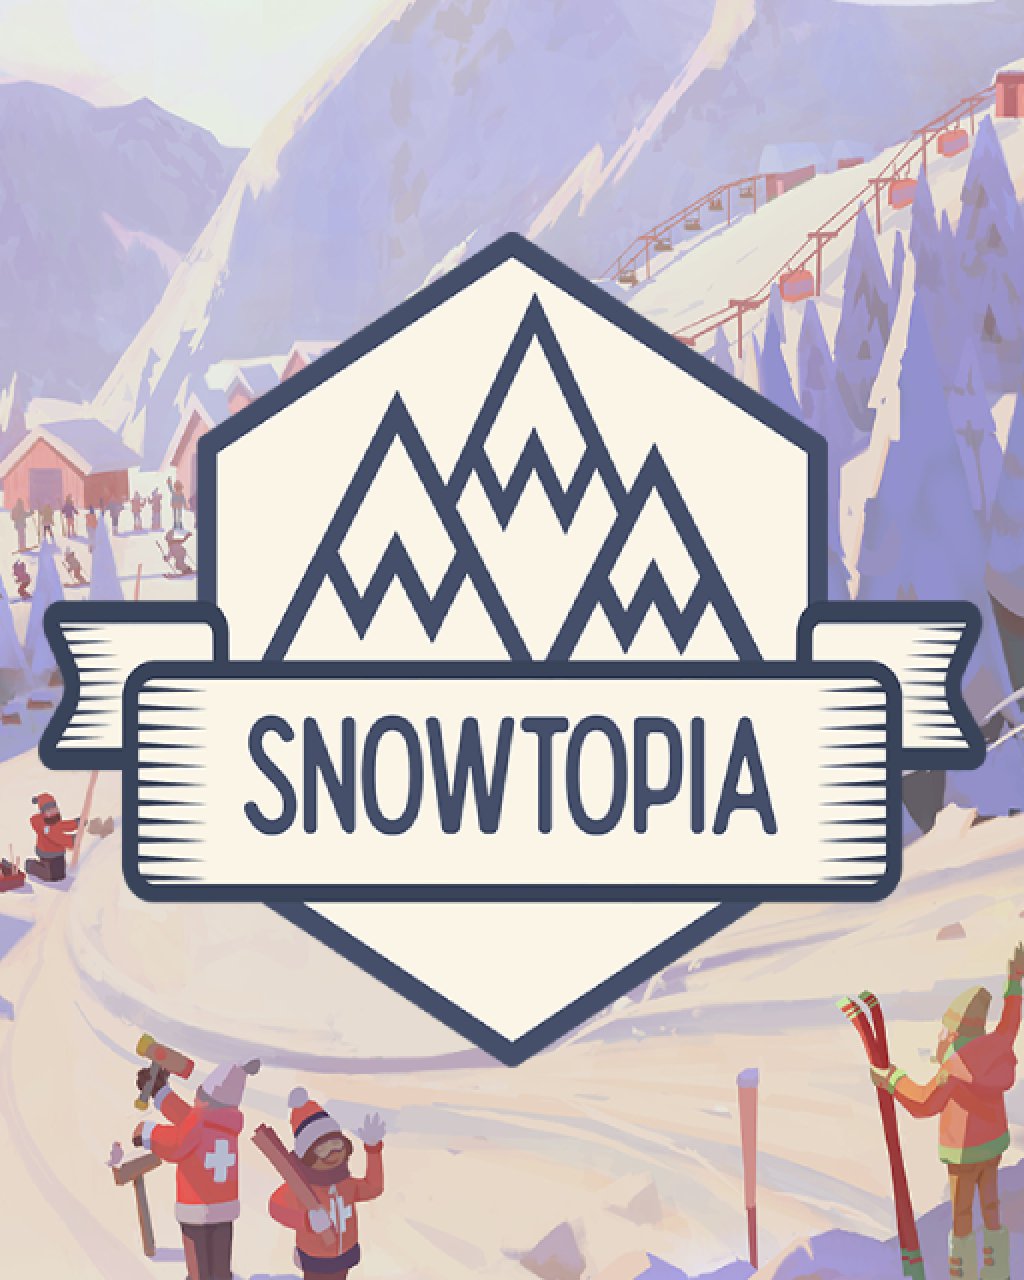 Snowtopia Ski Resort Tycoon